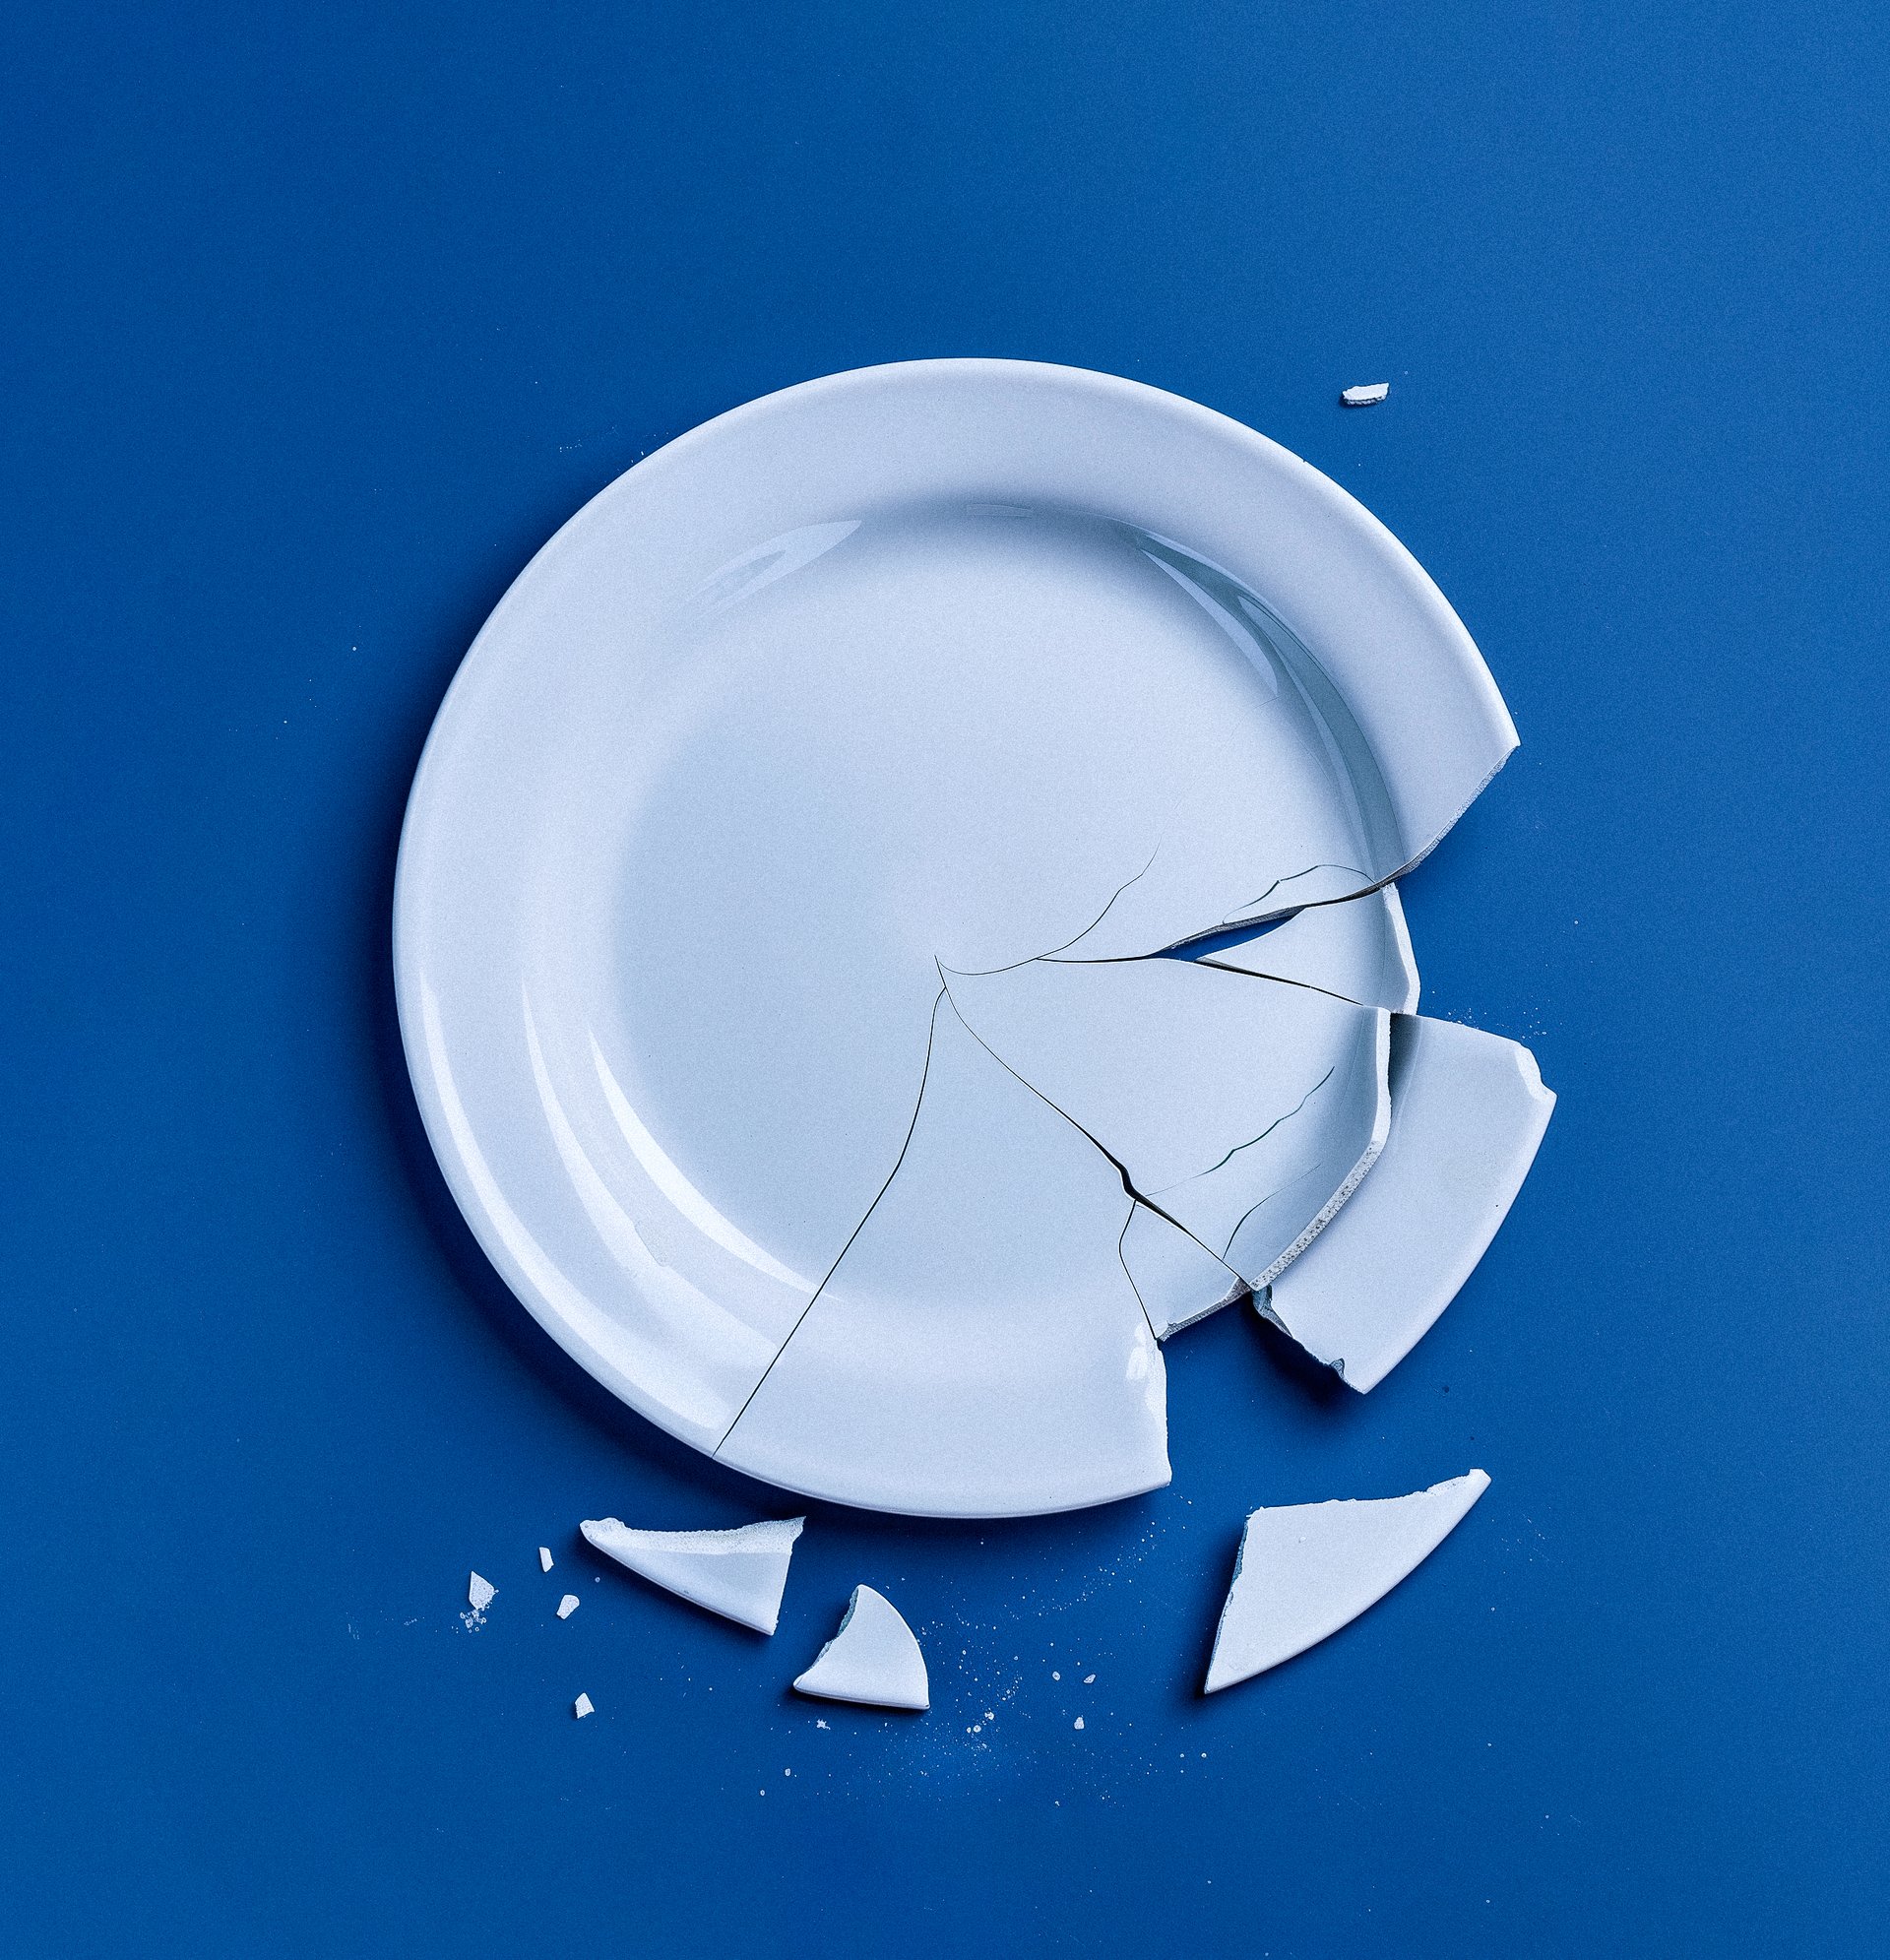 Broken plate